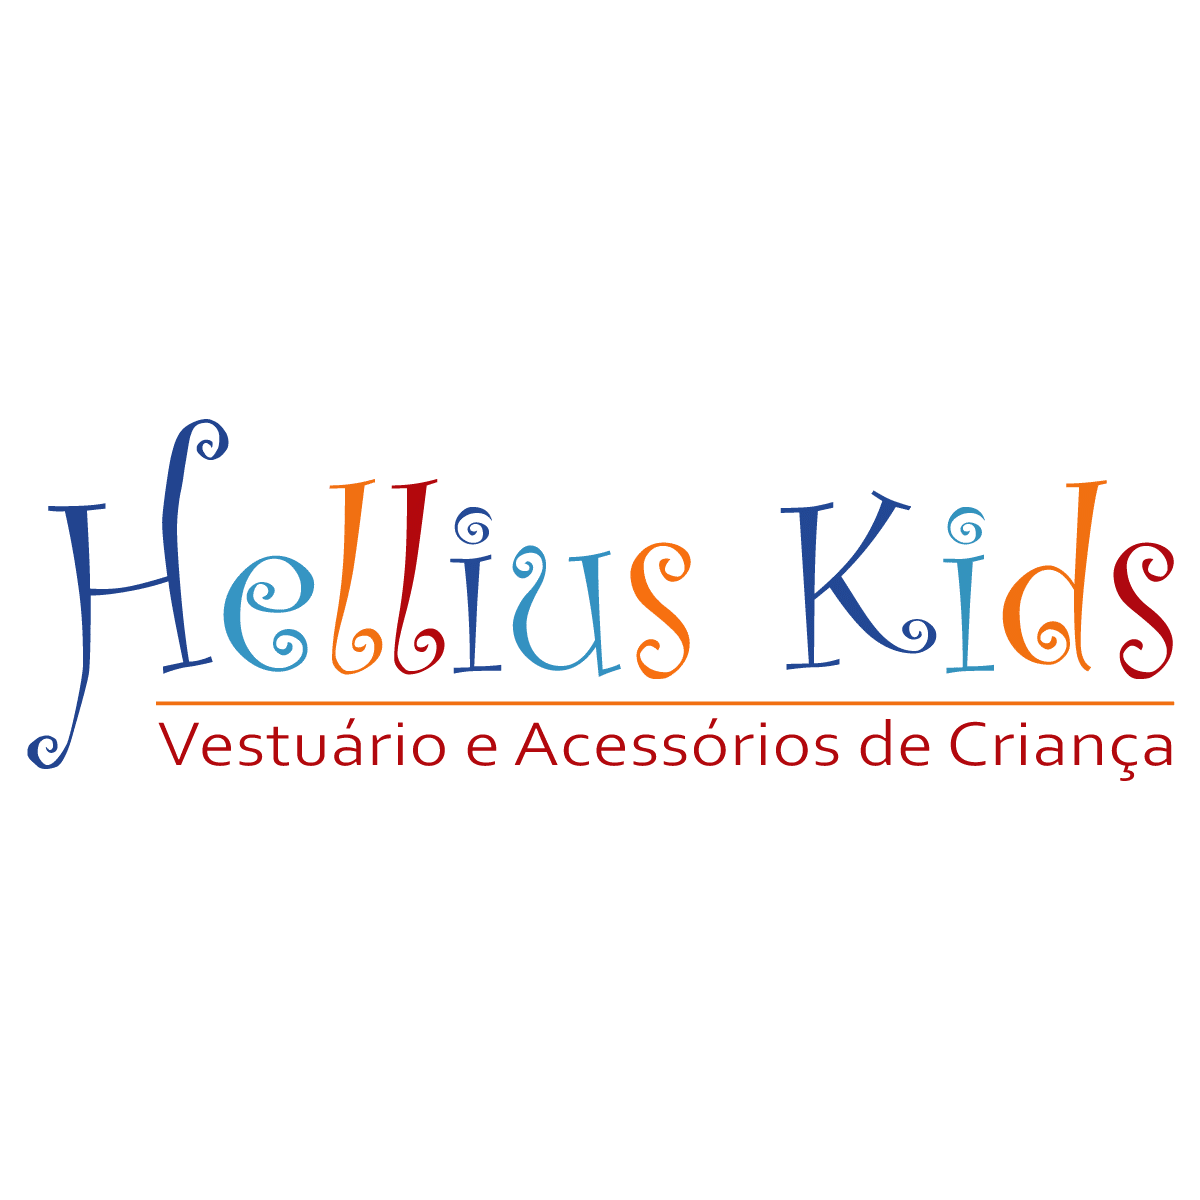 Hellius Kids